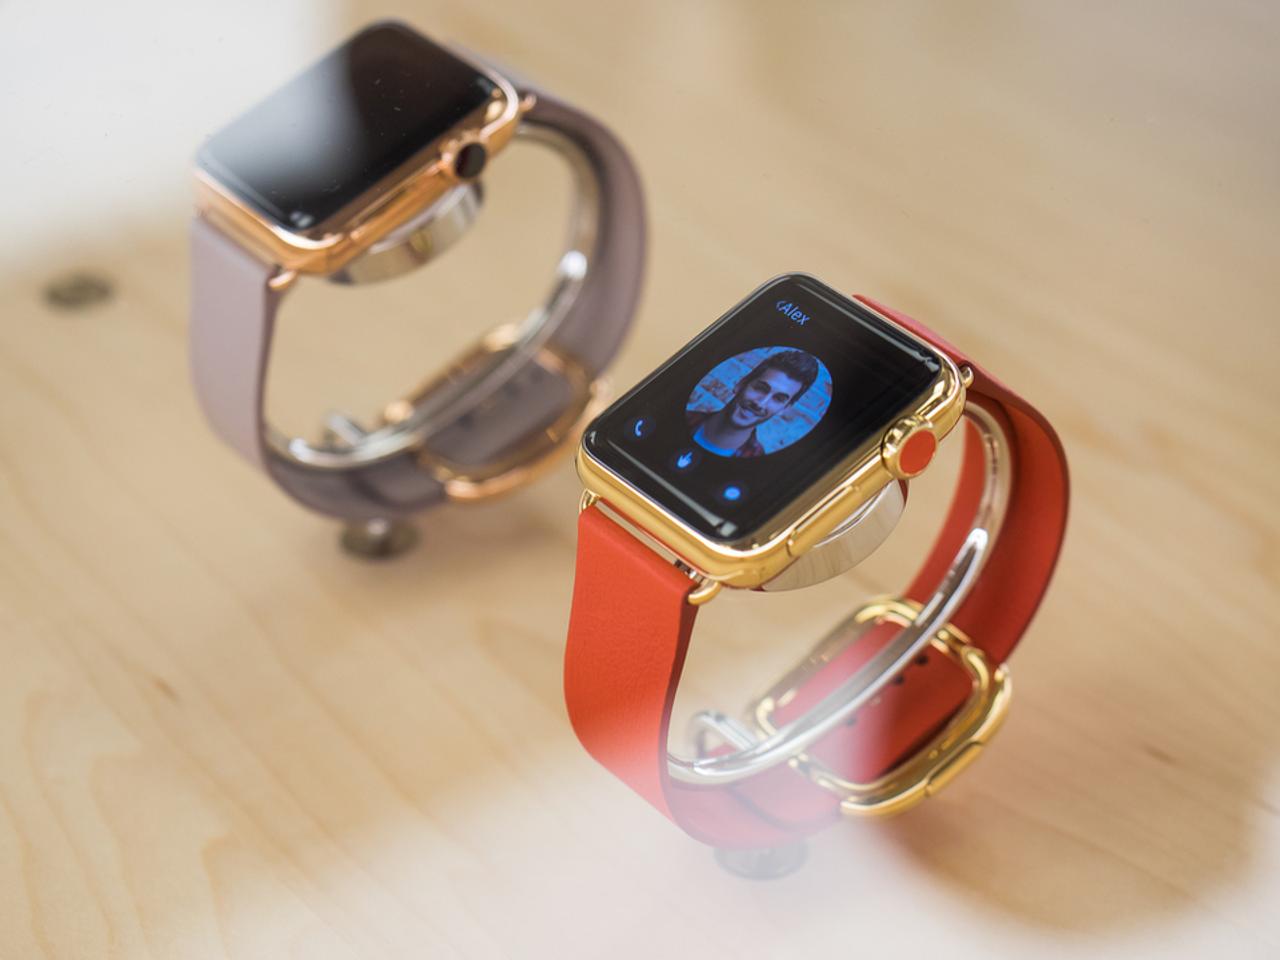 高級モデル、Apple Watch Editionがラインアップからひっそりといなくなりました #AppleEvent